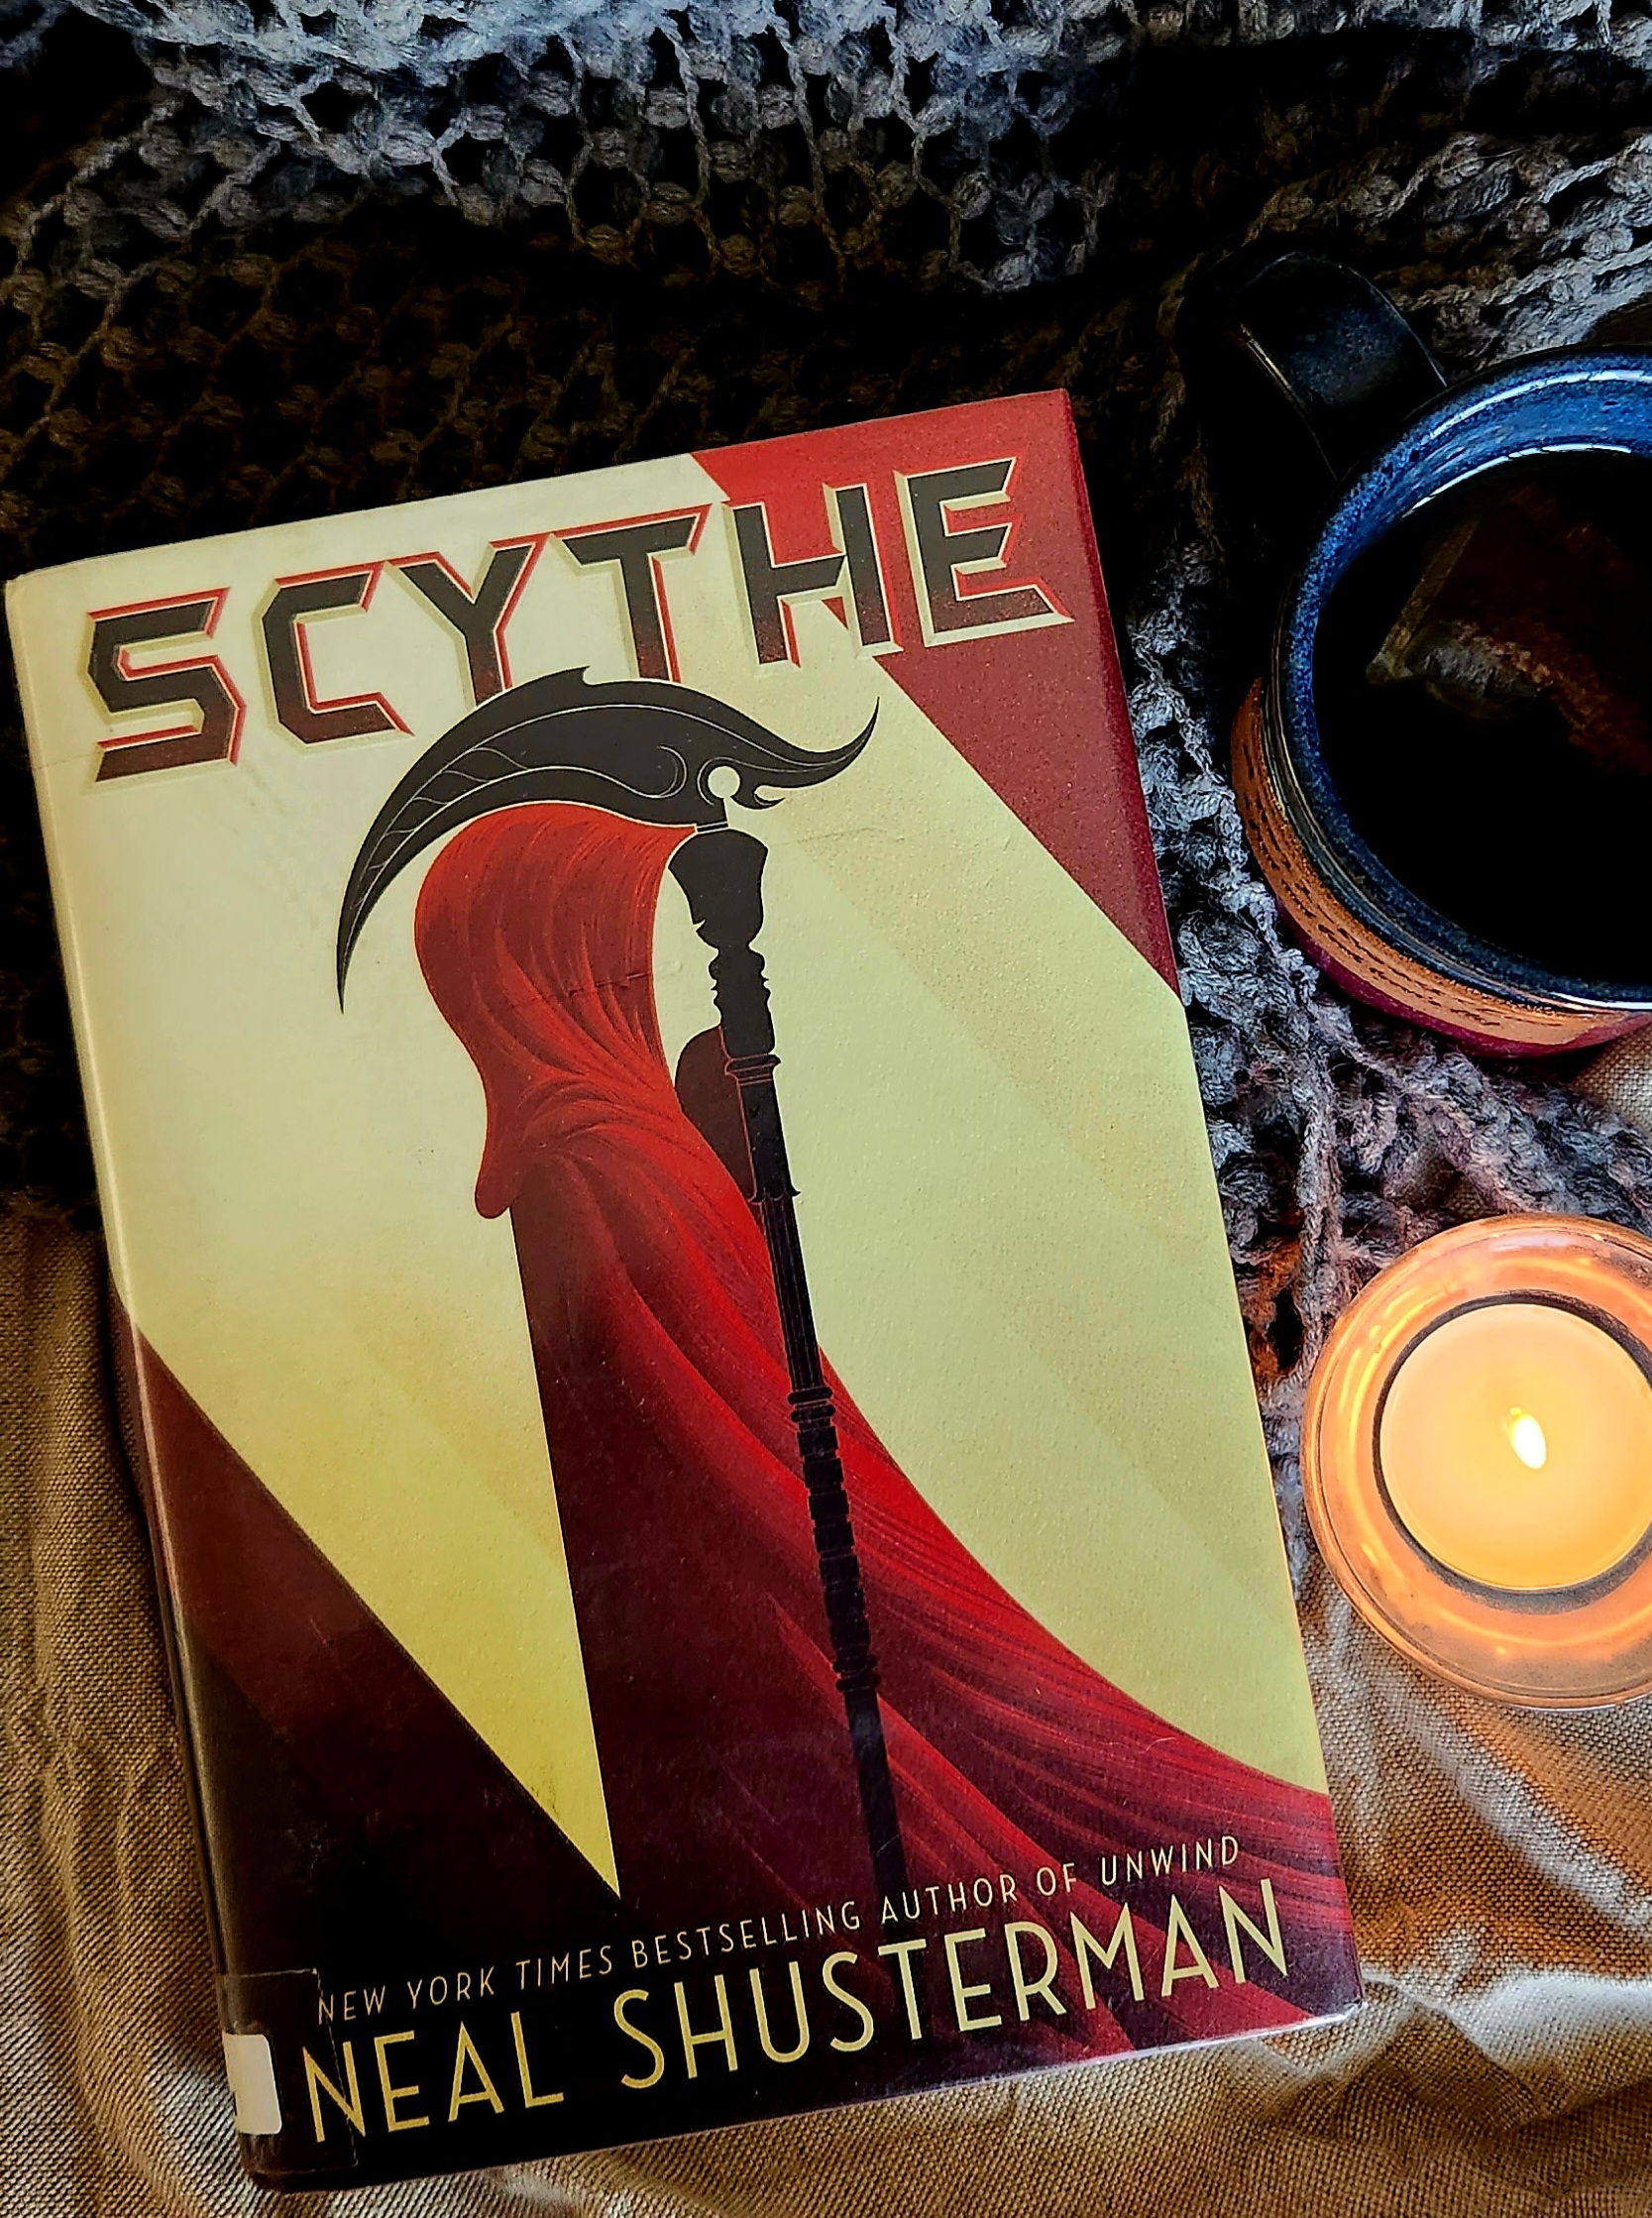 SCYTHE: Podcast Episode 5 on Dark Side of the Word